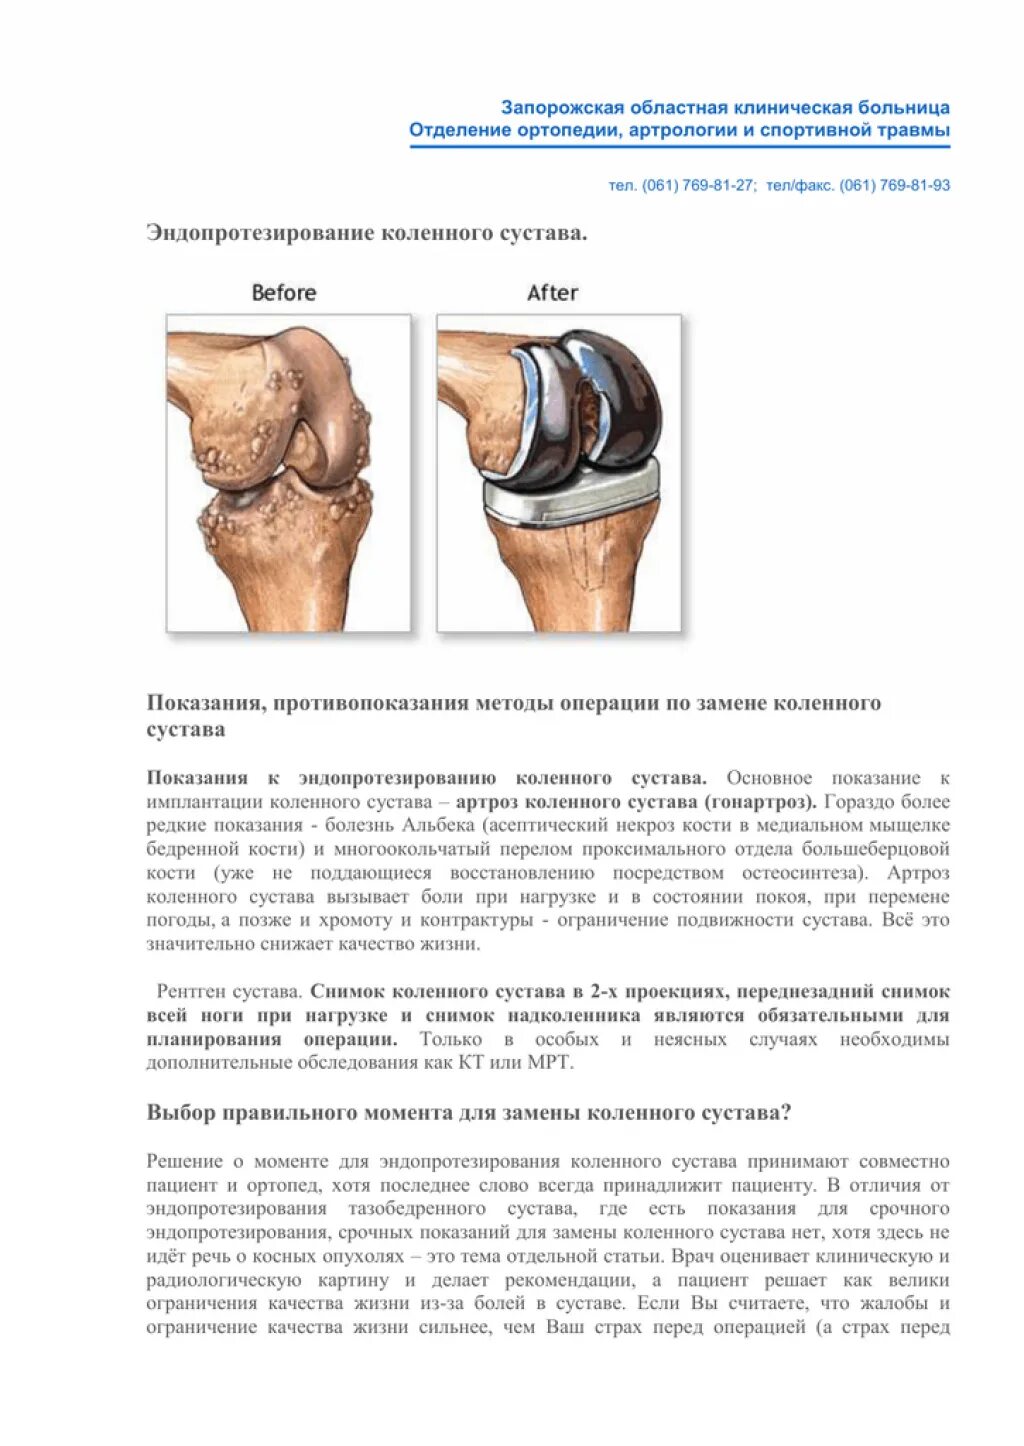 Бесплатная замена коленного сустава. Эндопротезирование коленного сустава. Операция тотального эндопротезирования коленного сустава. ТЭП эндопротезирование коленного сустава. Тотальное эндопротезирование коленного сустава схема операции.